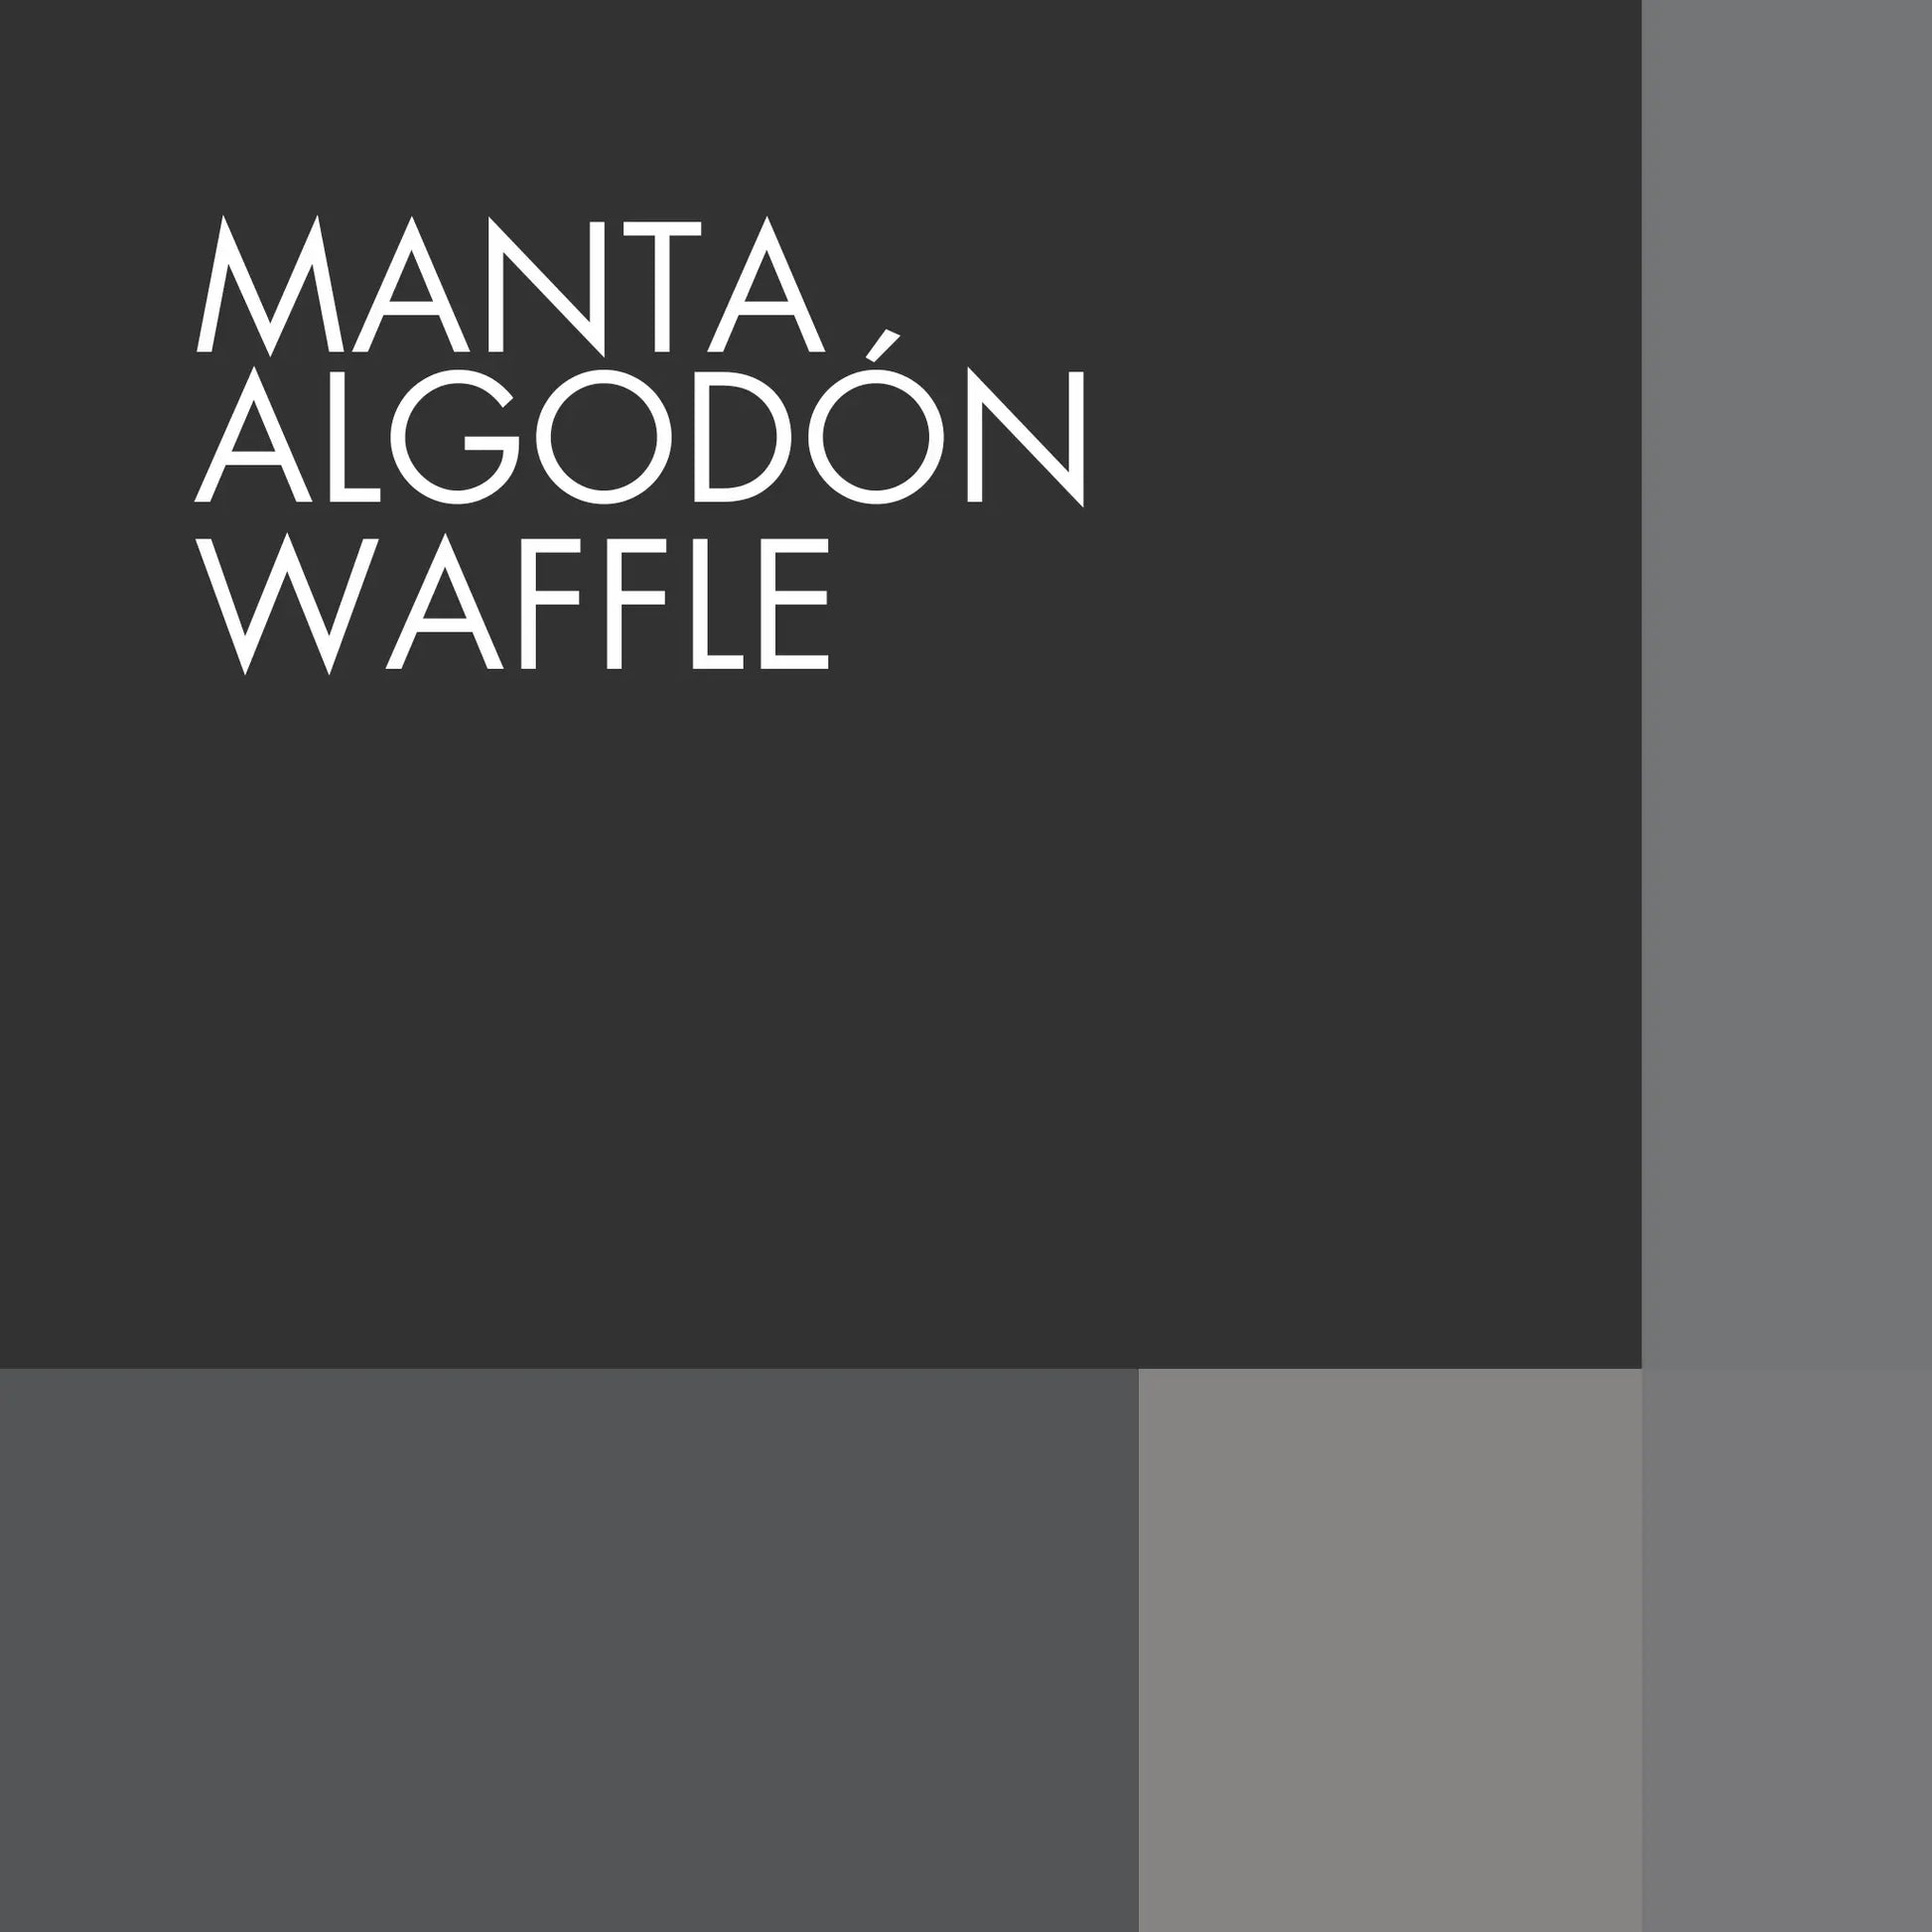 Manta Algodon Waffle Fontella